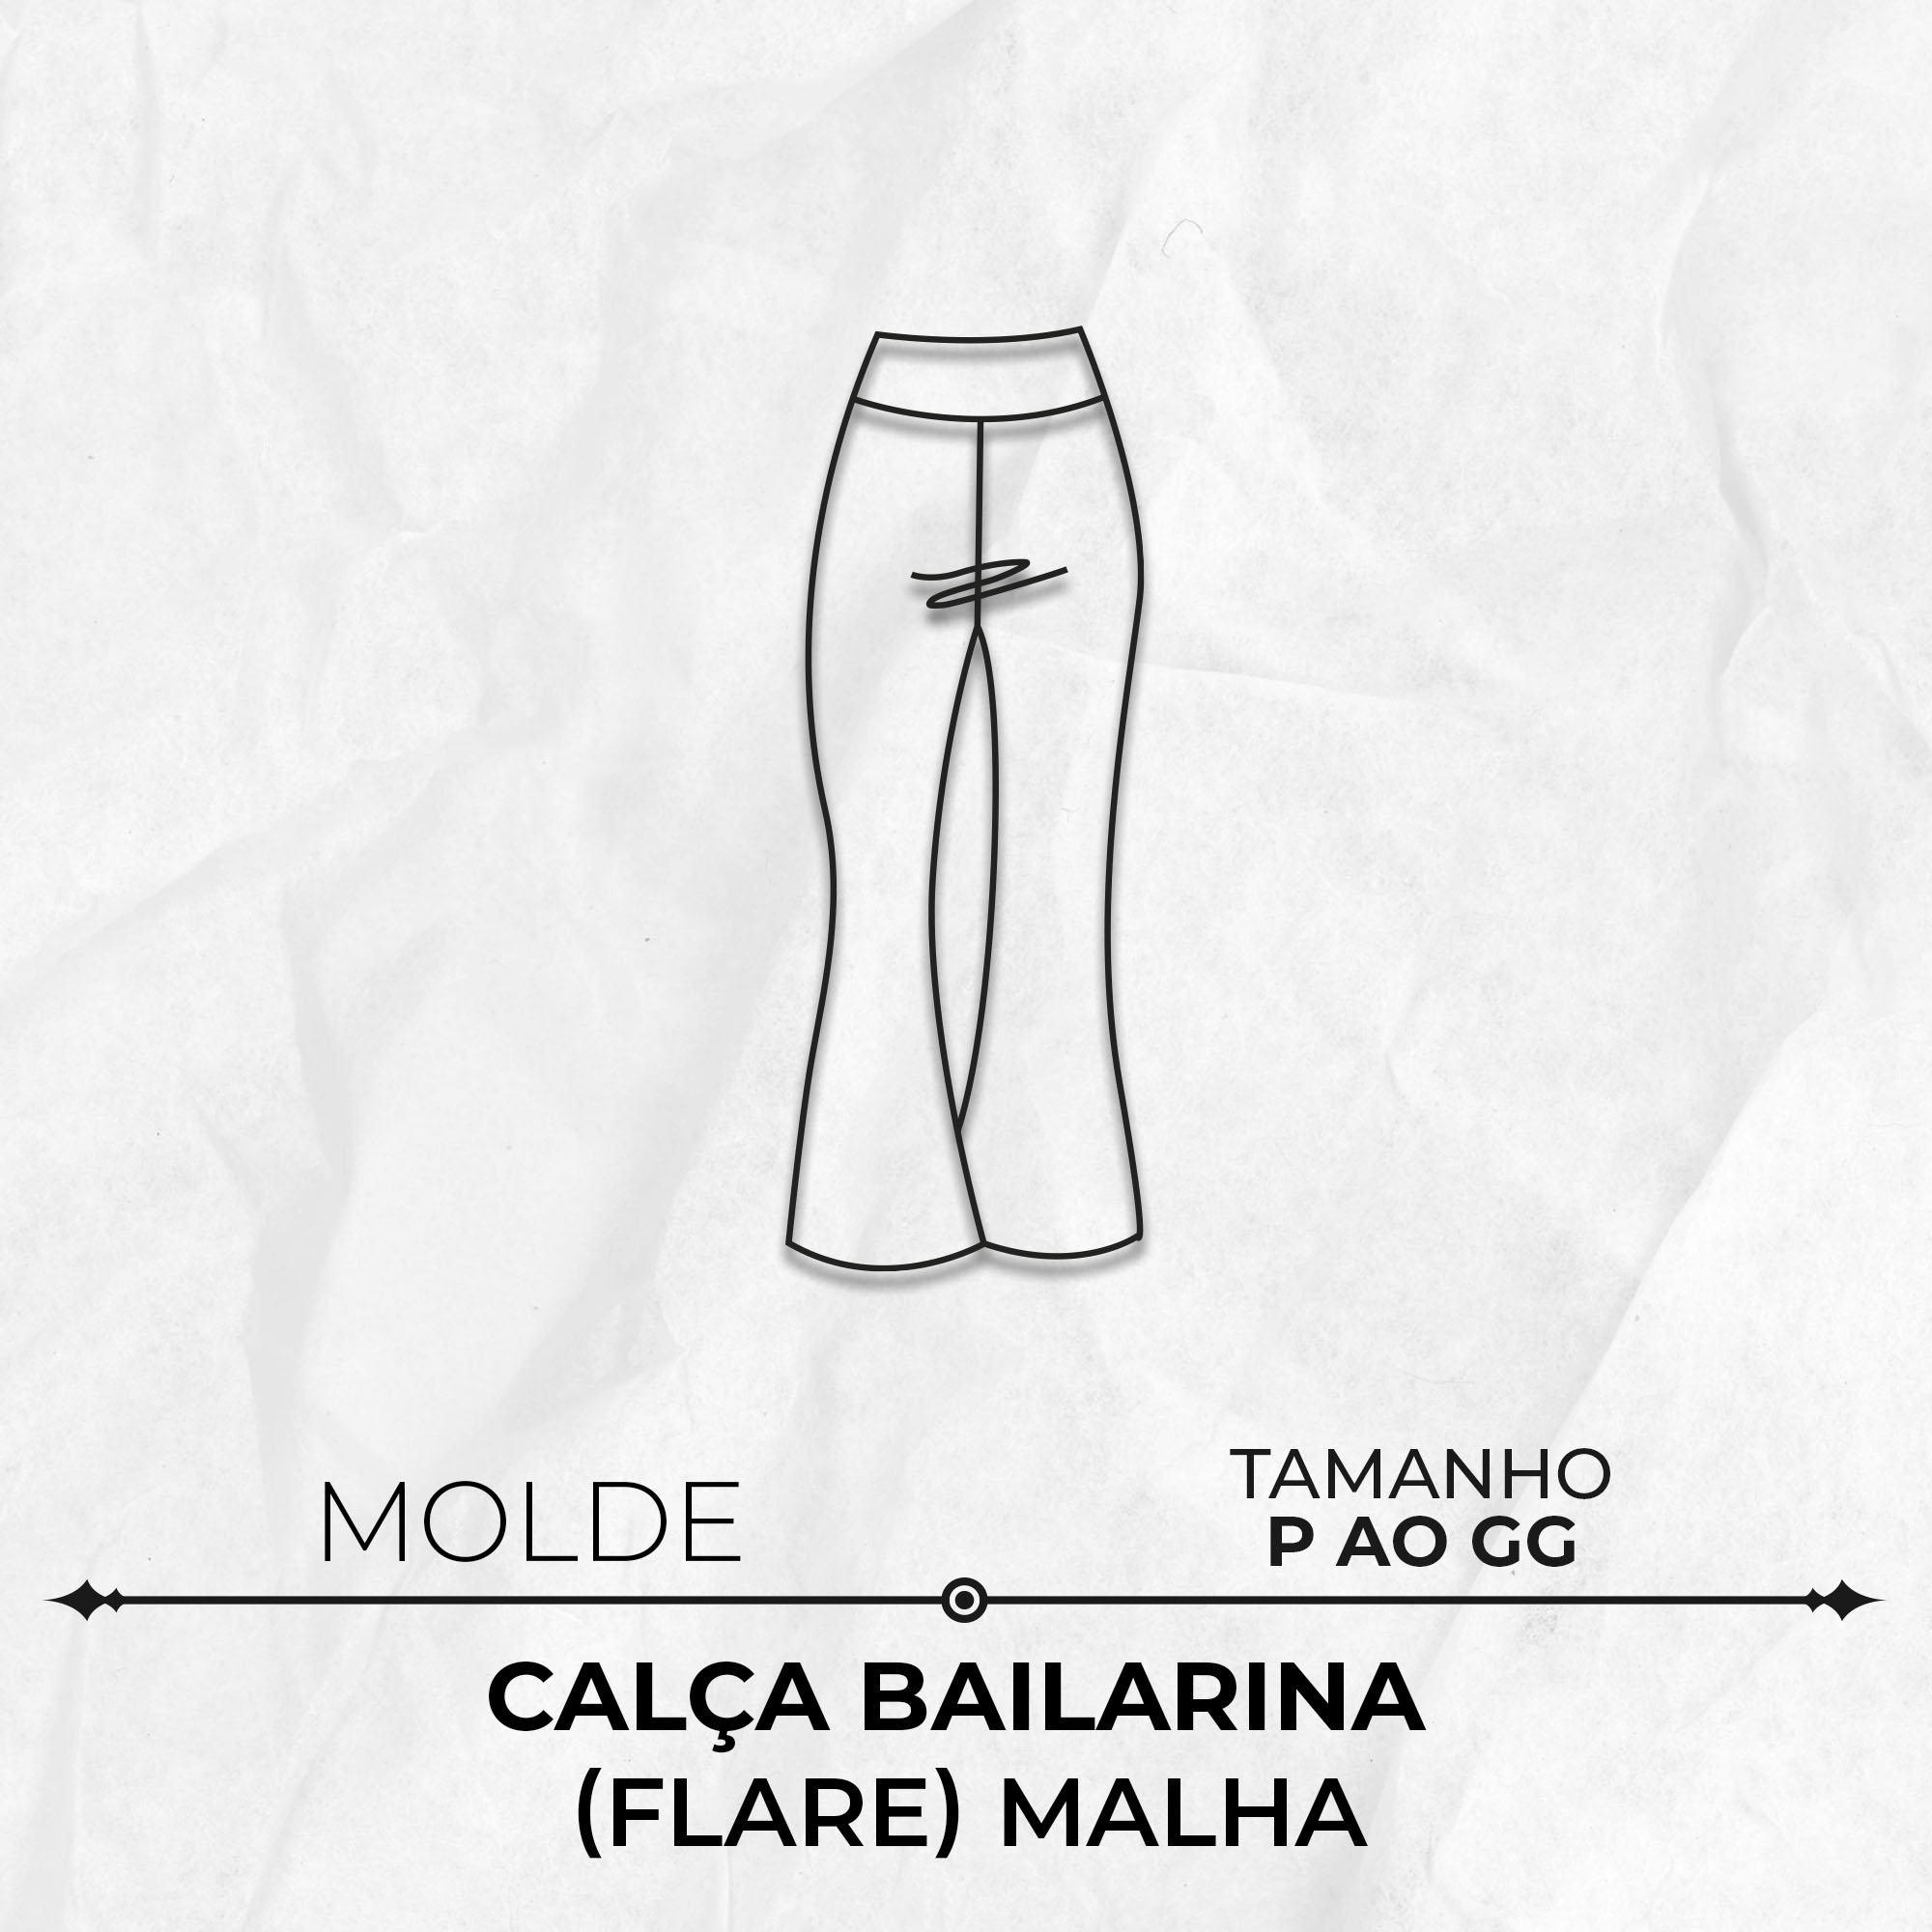 Molde calça bailarina (flare) malha P ao GG by Marlene Mukai